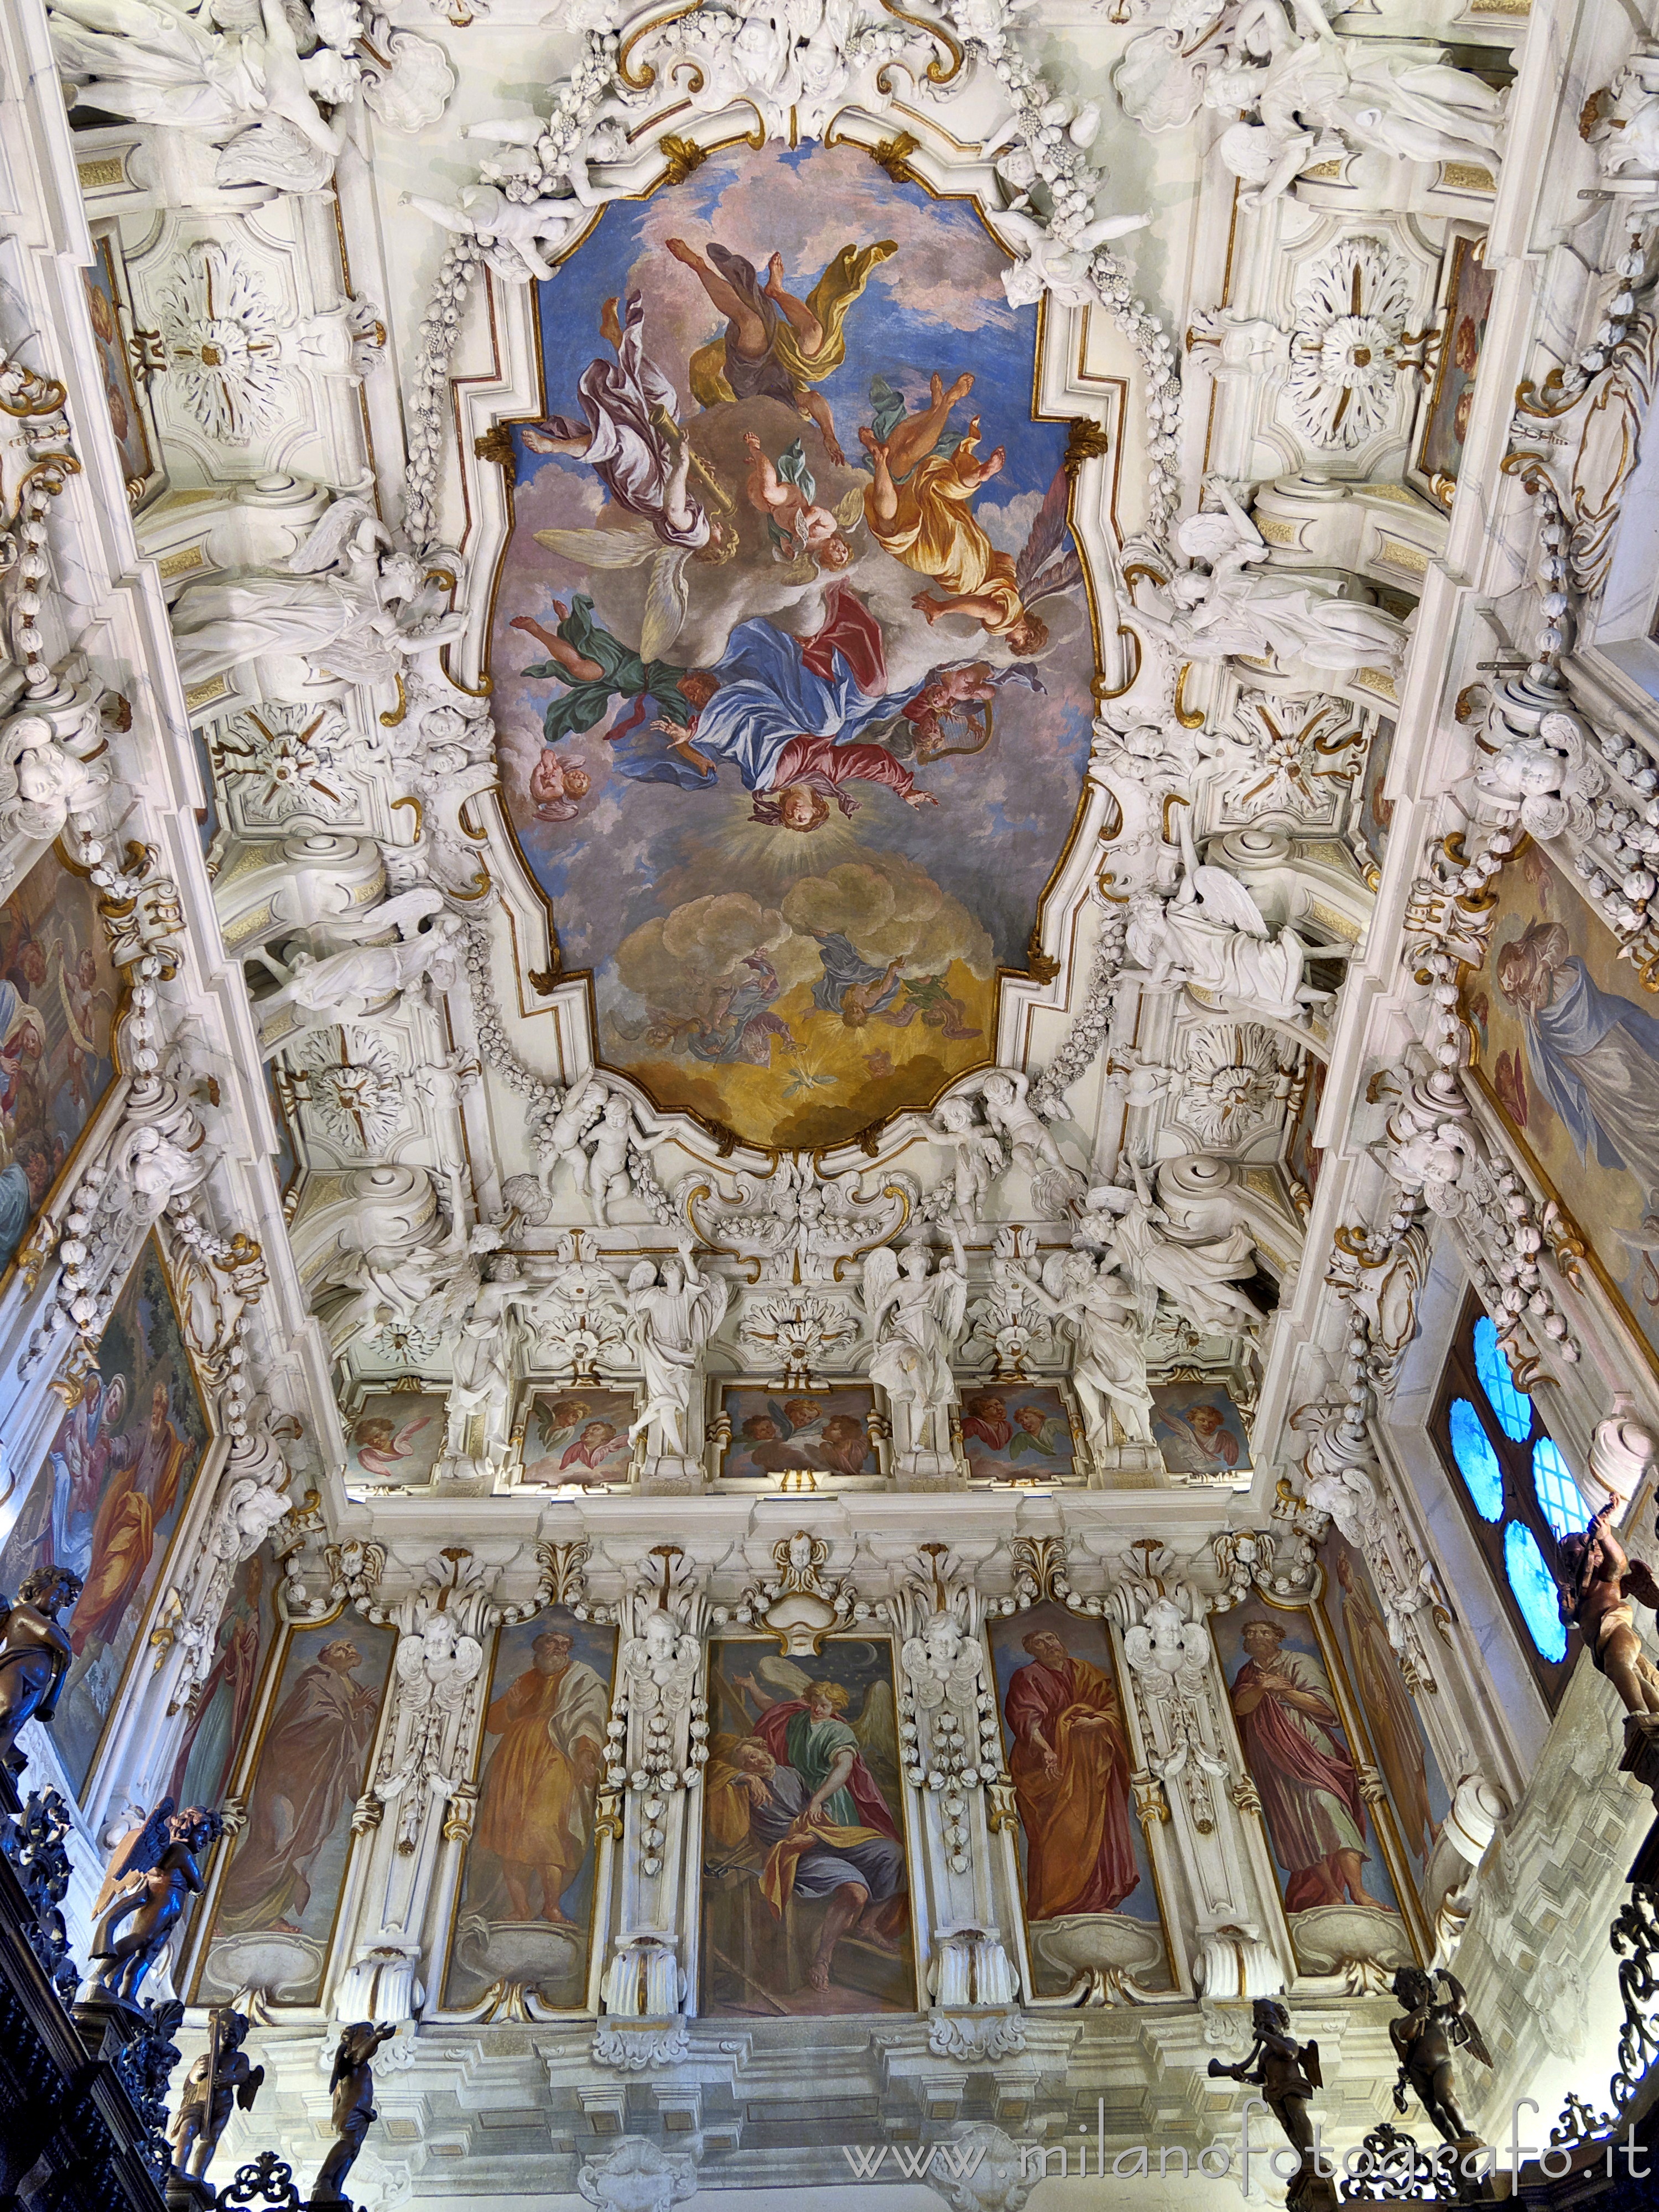 Caravaggio (Bergamo, Italy): Upper half of the sacristy of the Sanctuary of Caravaggio - Caravaggio (Bergamo, Italy)